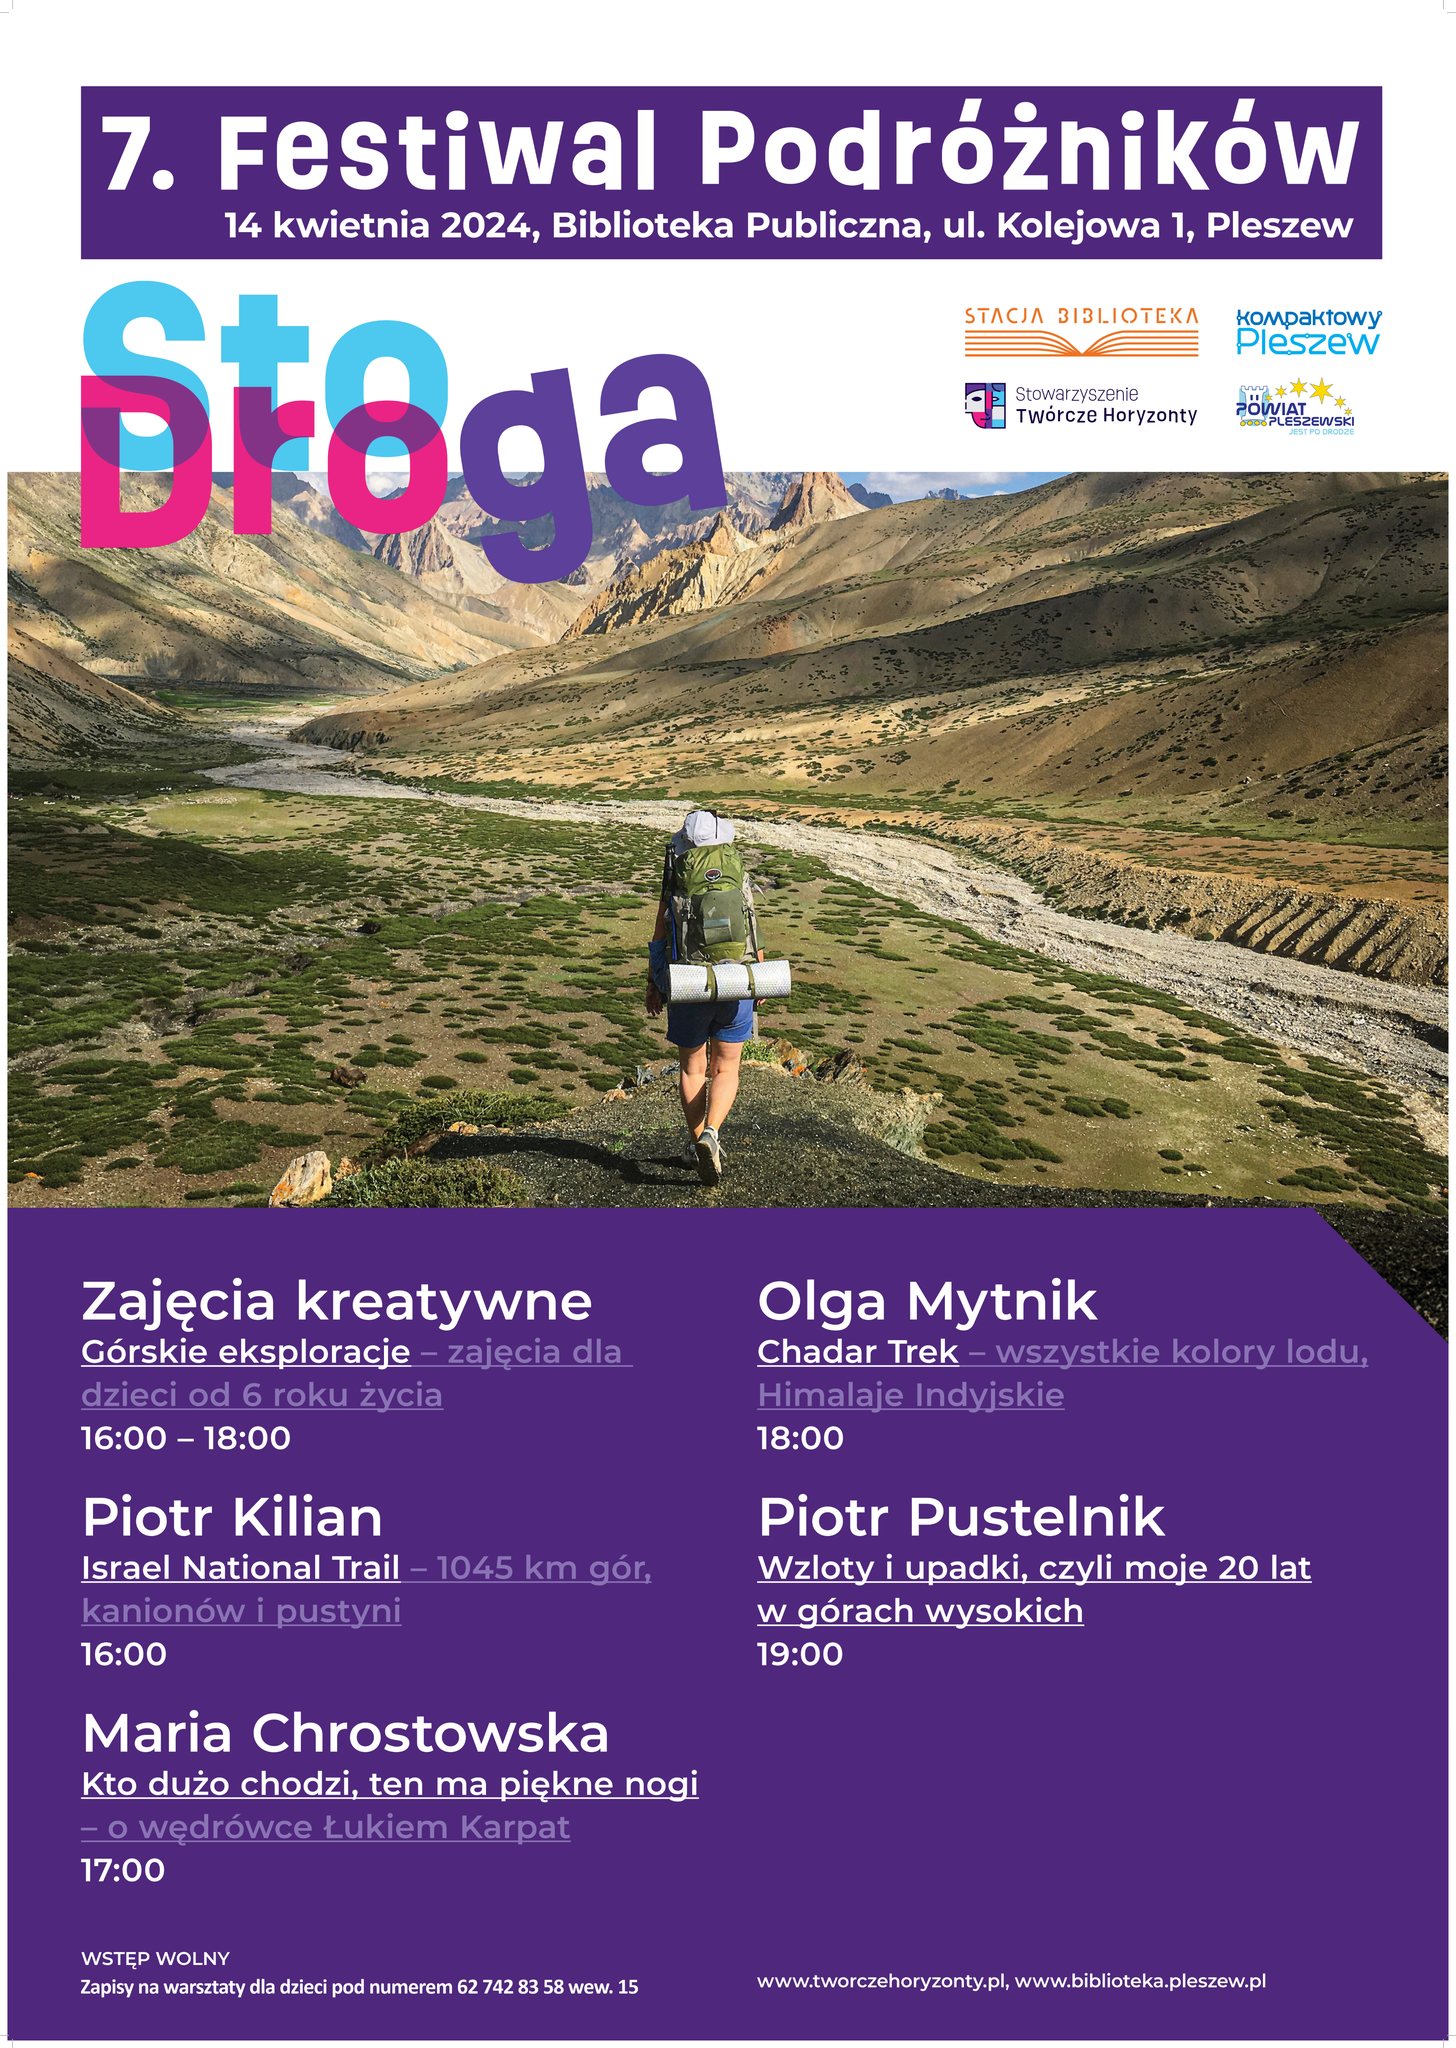 Plakat Festiwalu Podróżników 100droga odbywającego się w Bibliotece Publicznej MiG Pleszew 14 kwietnia 2024 r. od godziny 16:00.